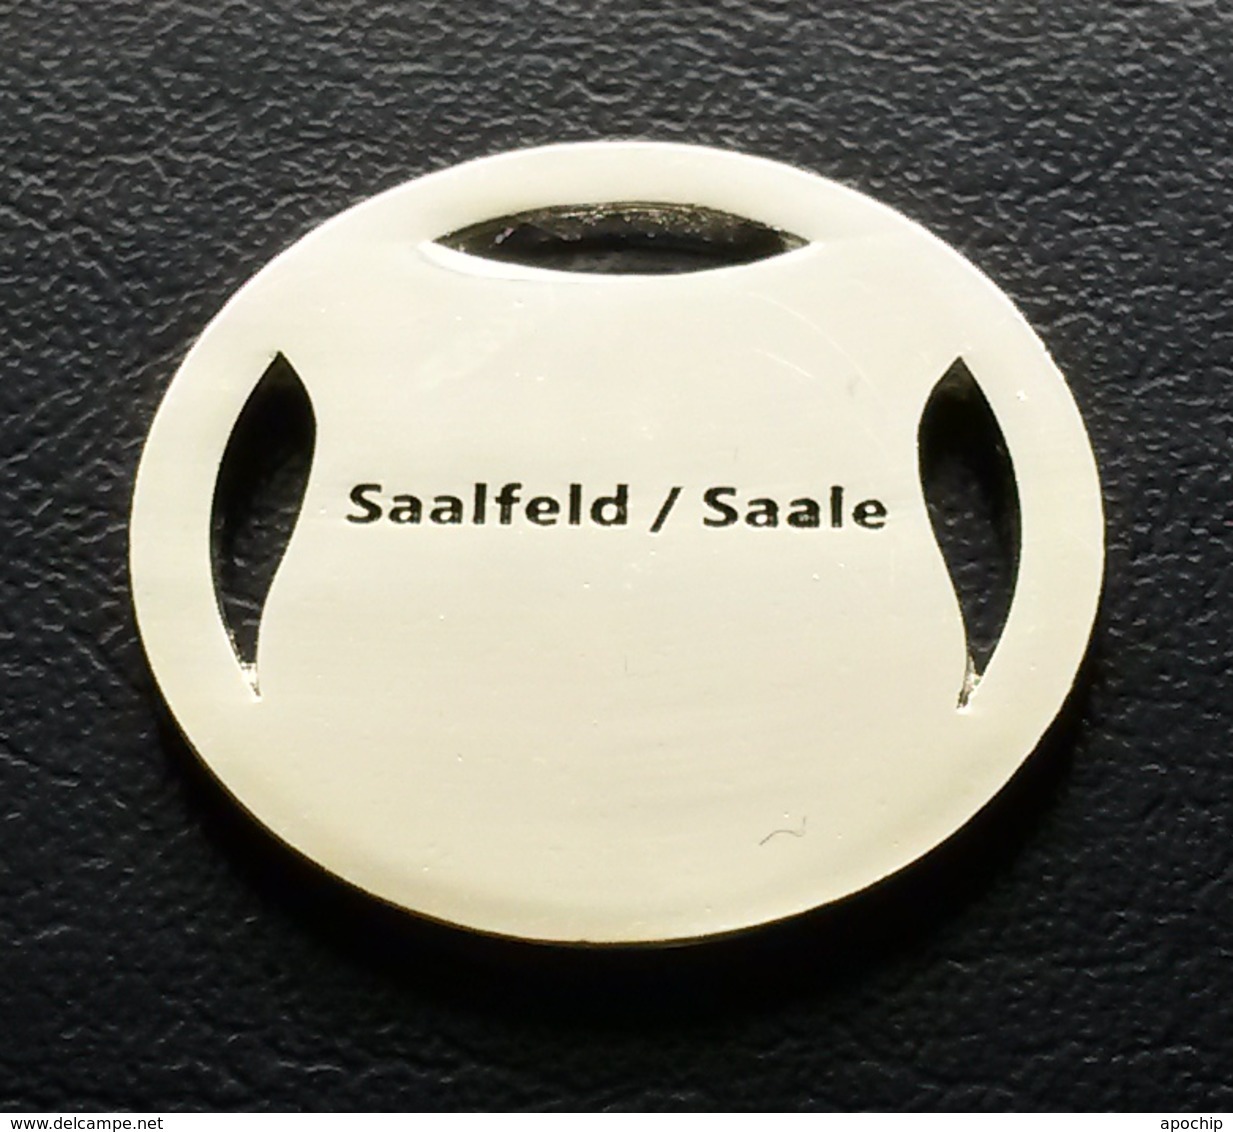 Saalfeld / Saale Wappen Einkaufswagenchip EKW Chip Jeton Caddie - Moneda Carro